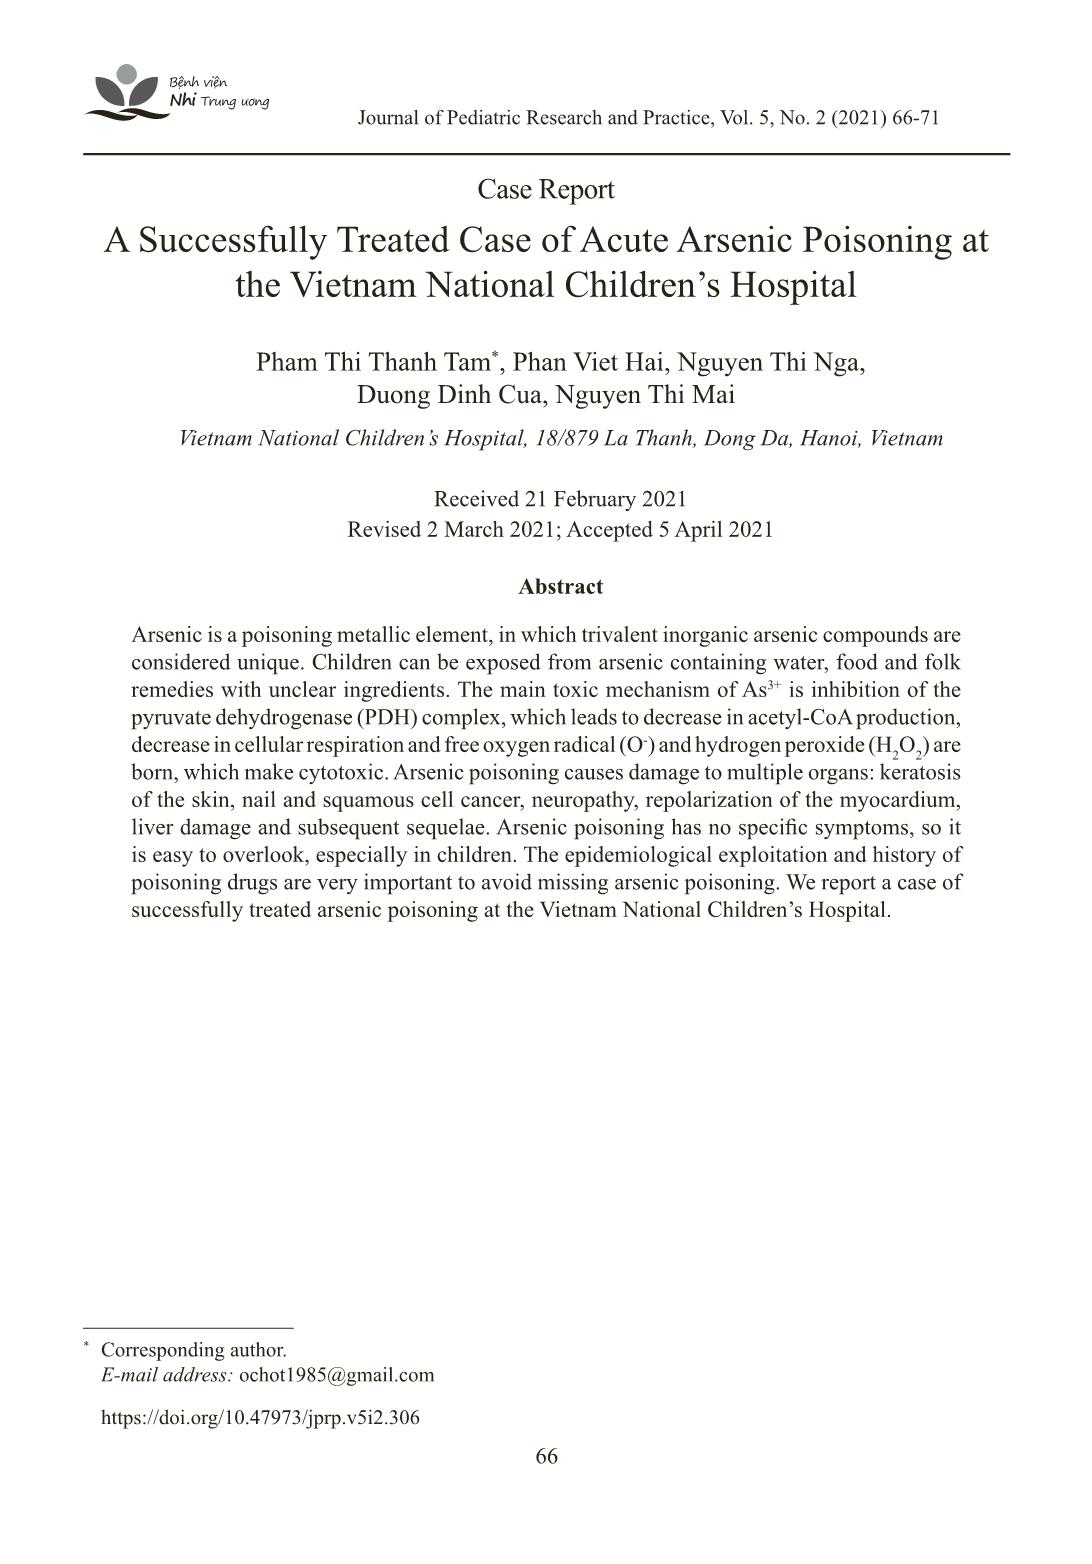 Báo cáo một trường hợp ngộ độc Asen cấp tính được điều trị thành công tại Bệnh viện Nhi Trung ương trang 1